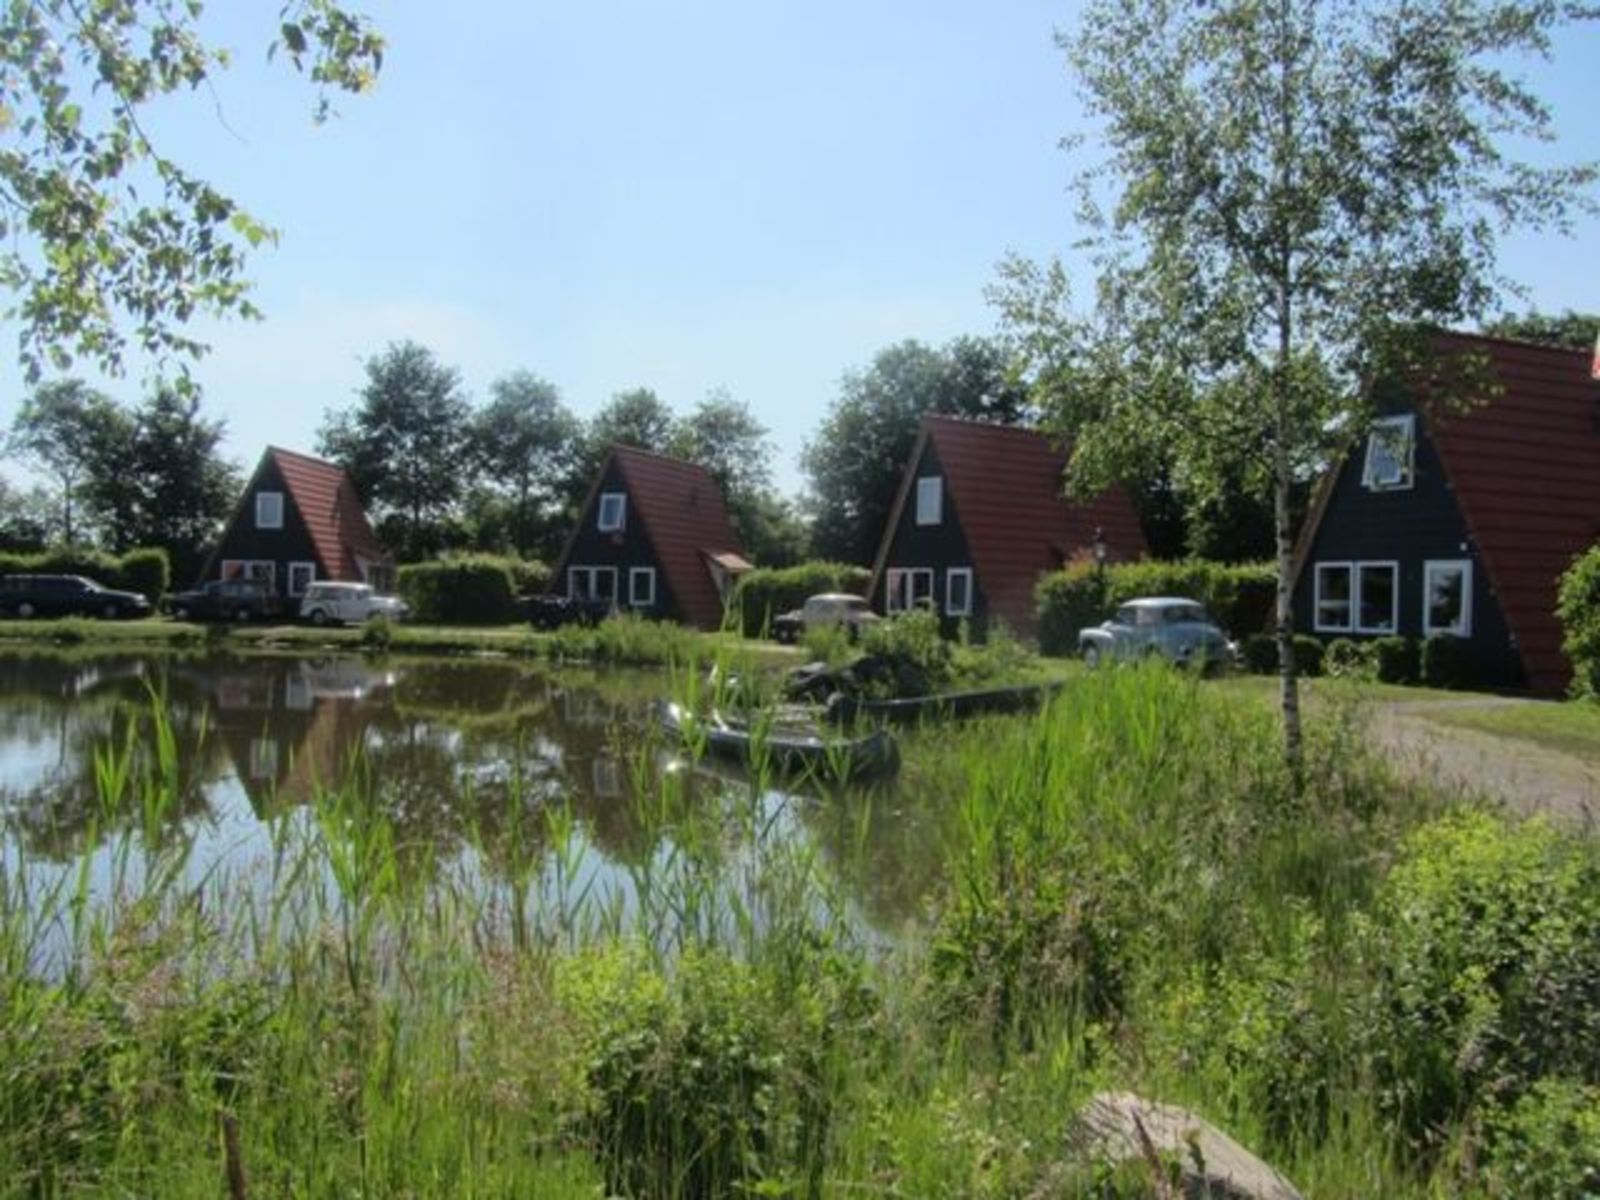 Das Blockhaus in Kombination mit 3 Fischerhäusern